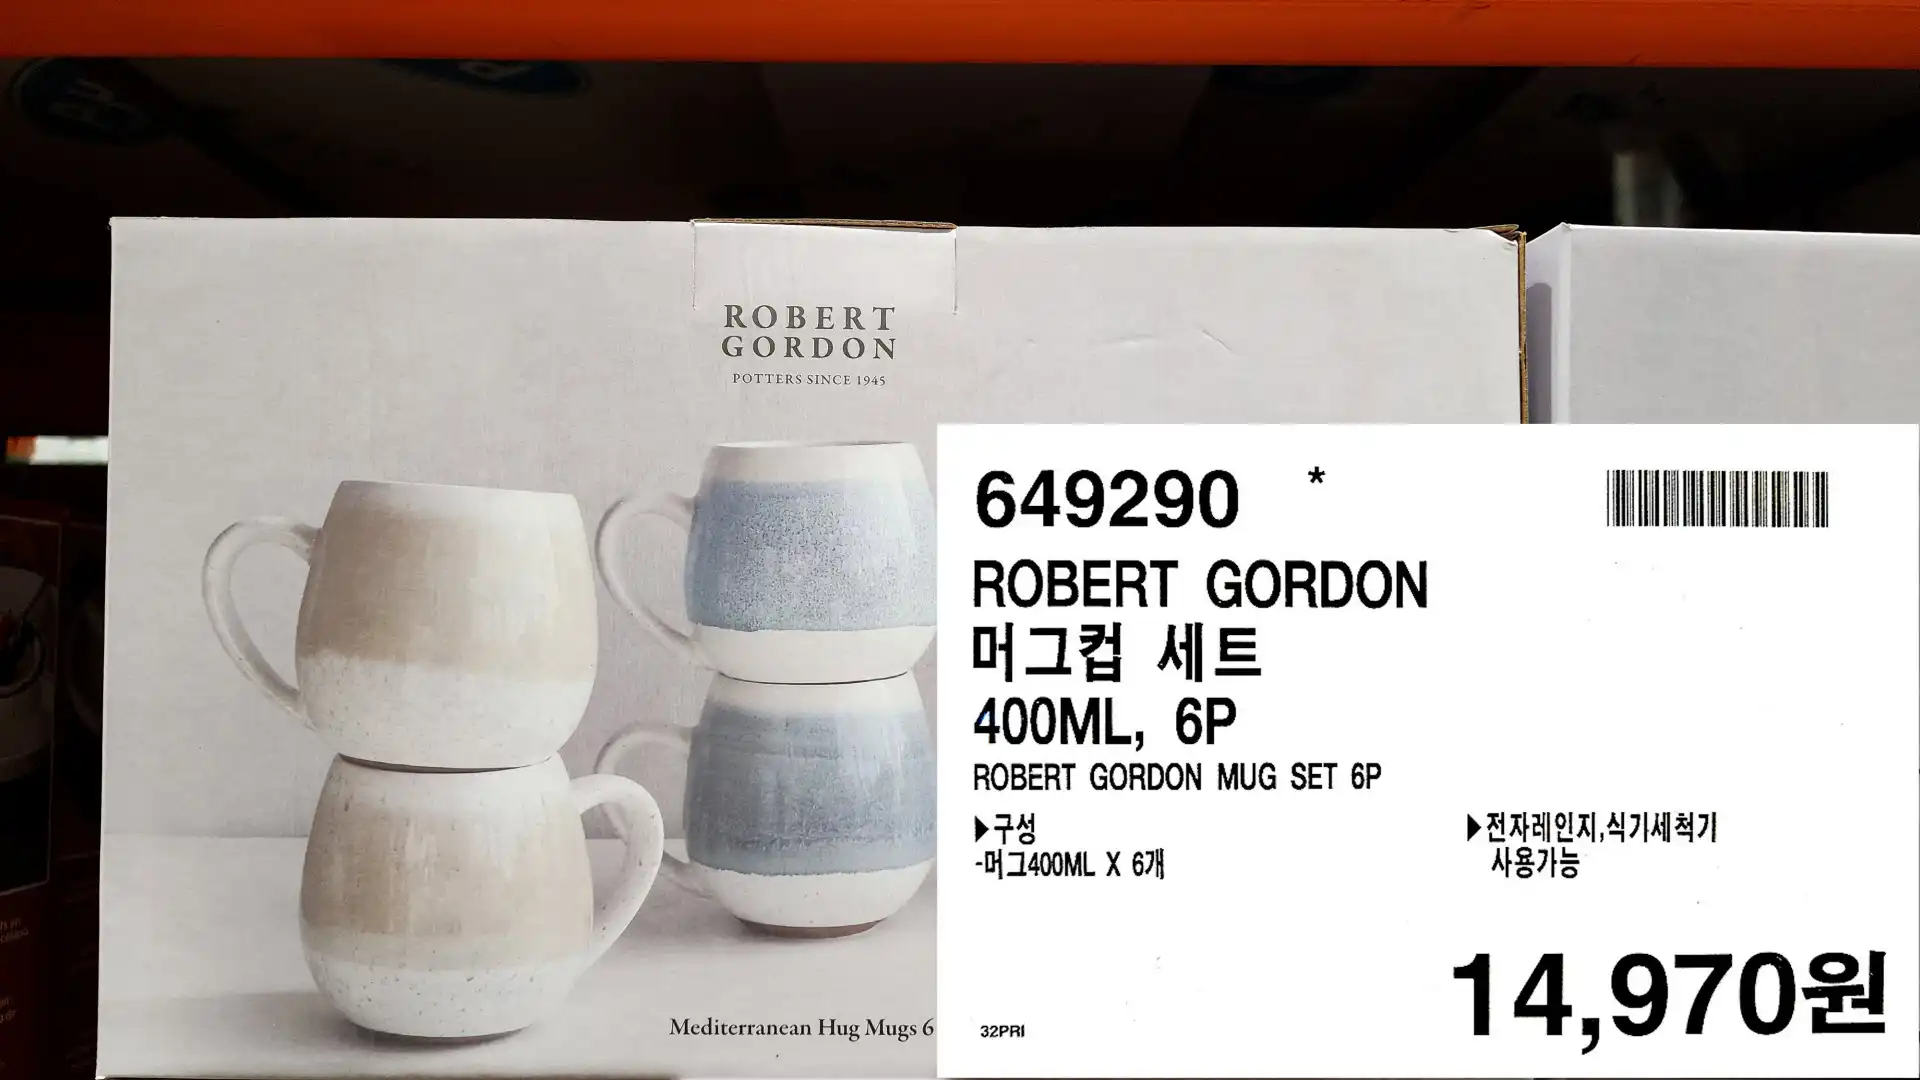 ROBERT GORDON
머그컵 세트
400ML&#44; 6P
ROBERT GORDON MUG SET 6P
▶ 구성
-머그400ML X 6개
▶전자레인지&#44;식기세척기
사용가능
14&#44;970원